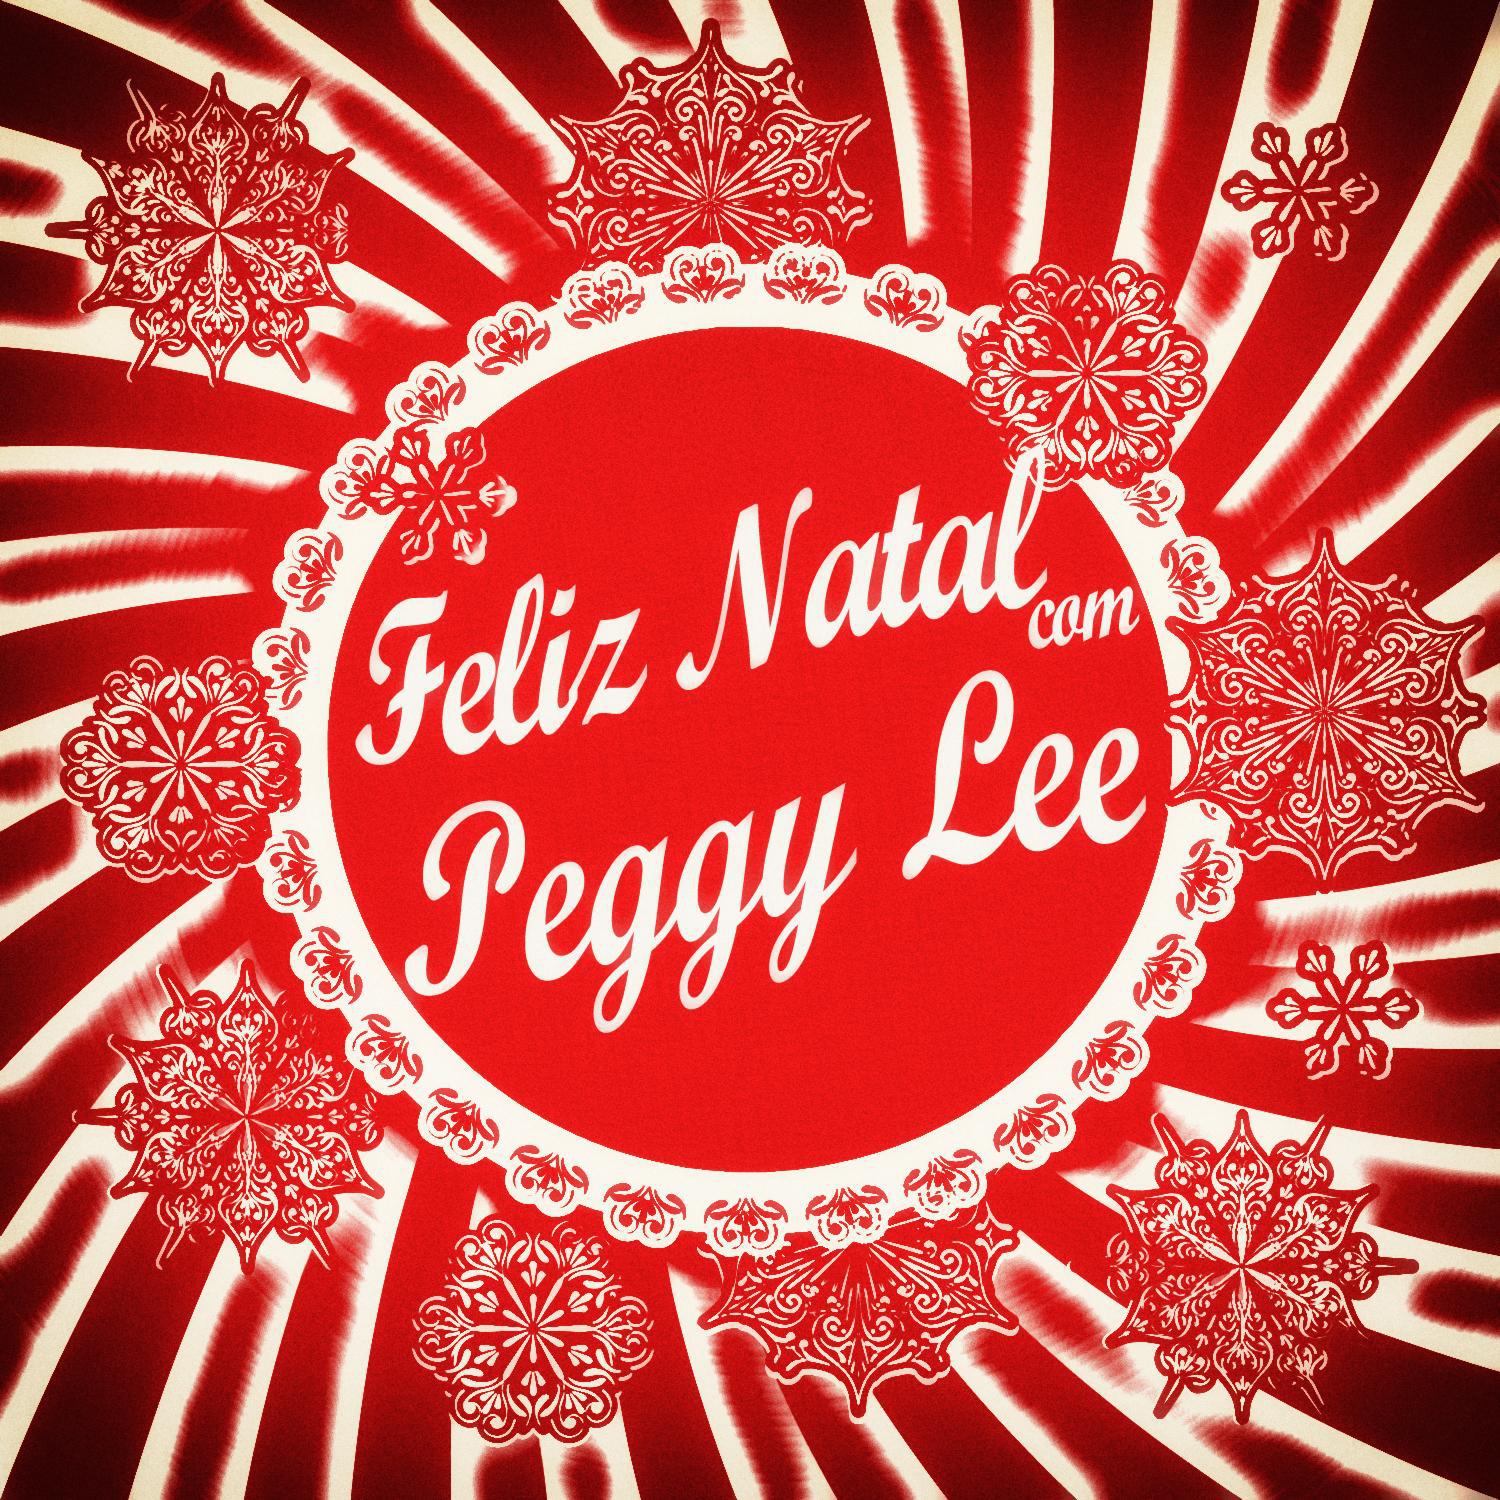 Feliz Natal Com Peggy Lee专辑